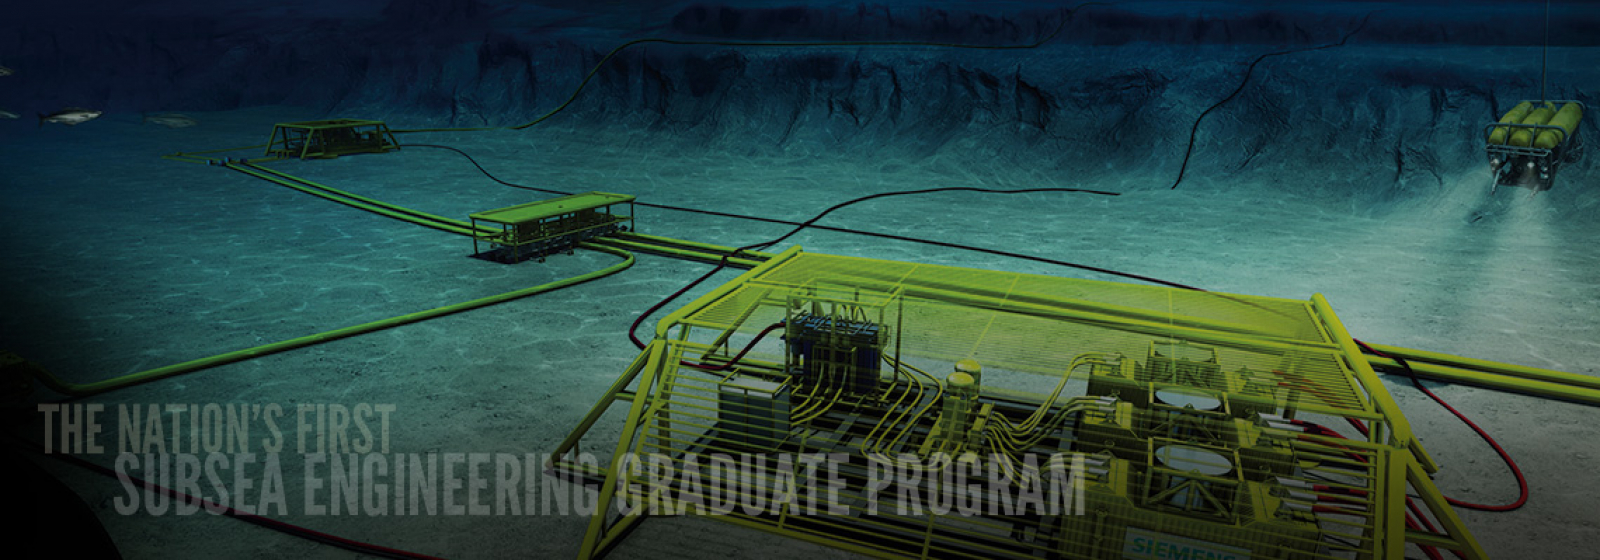 Subsea Engineering Graduate Program